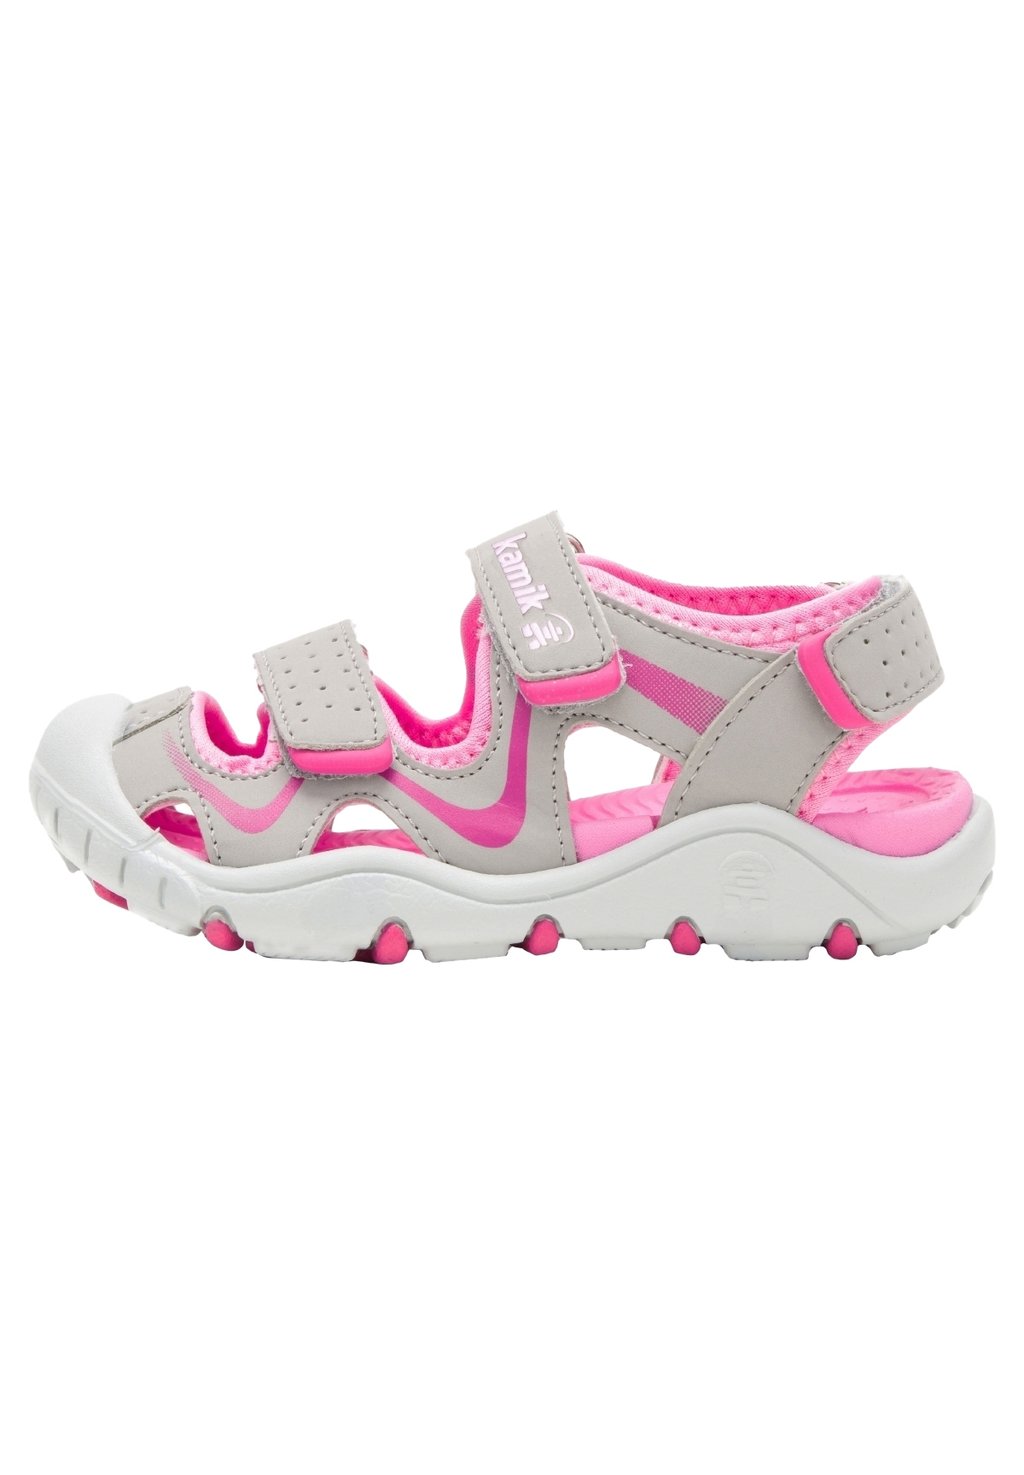 Трекинговые сандалии WANDER UNISEX Kamik, цвет grey pink трекинговые сандалии lurchi цвет grey